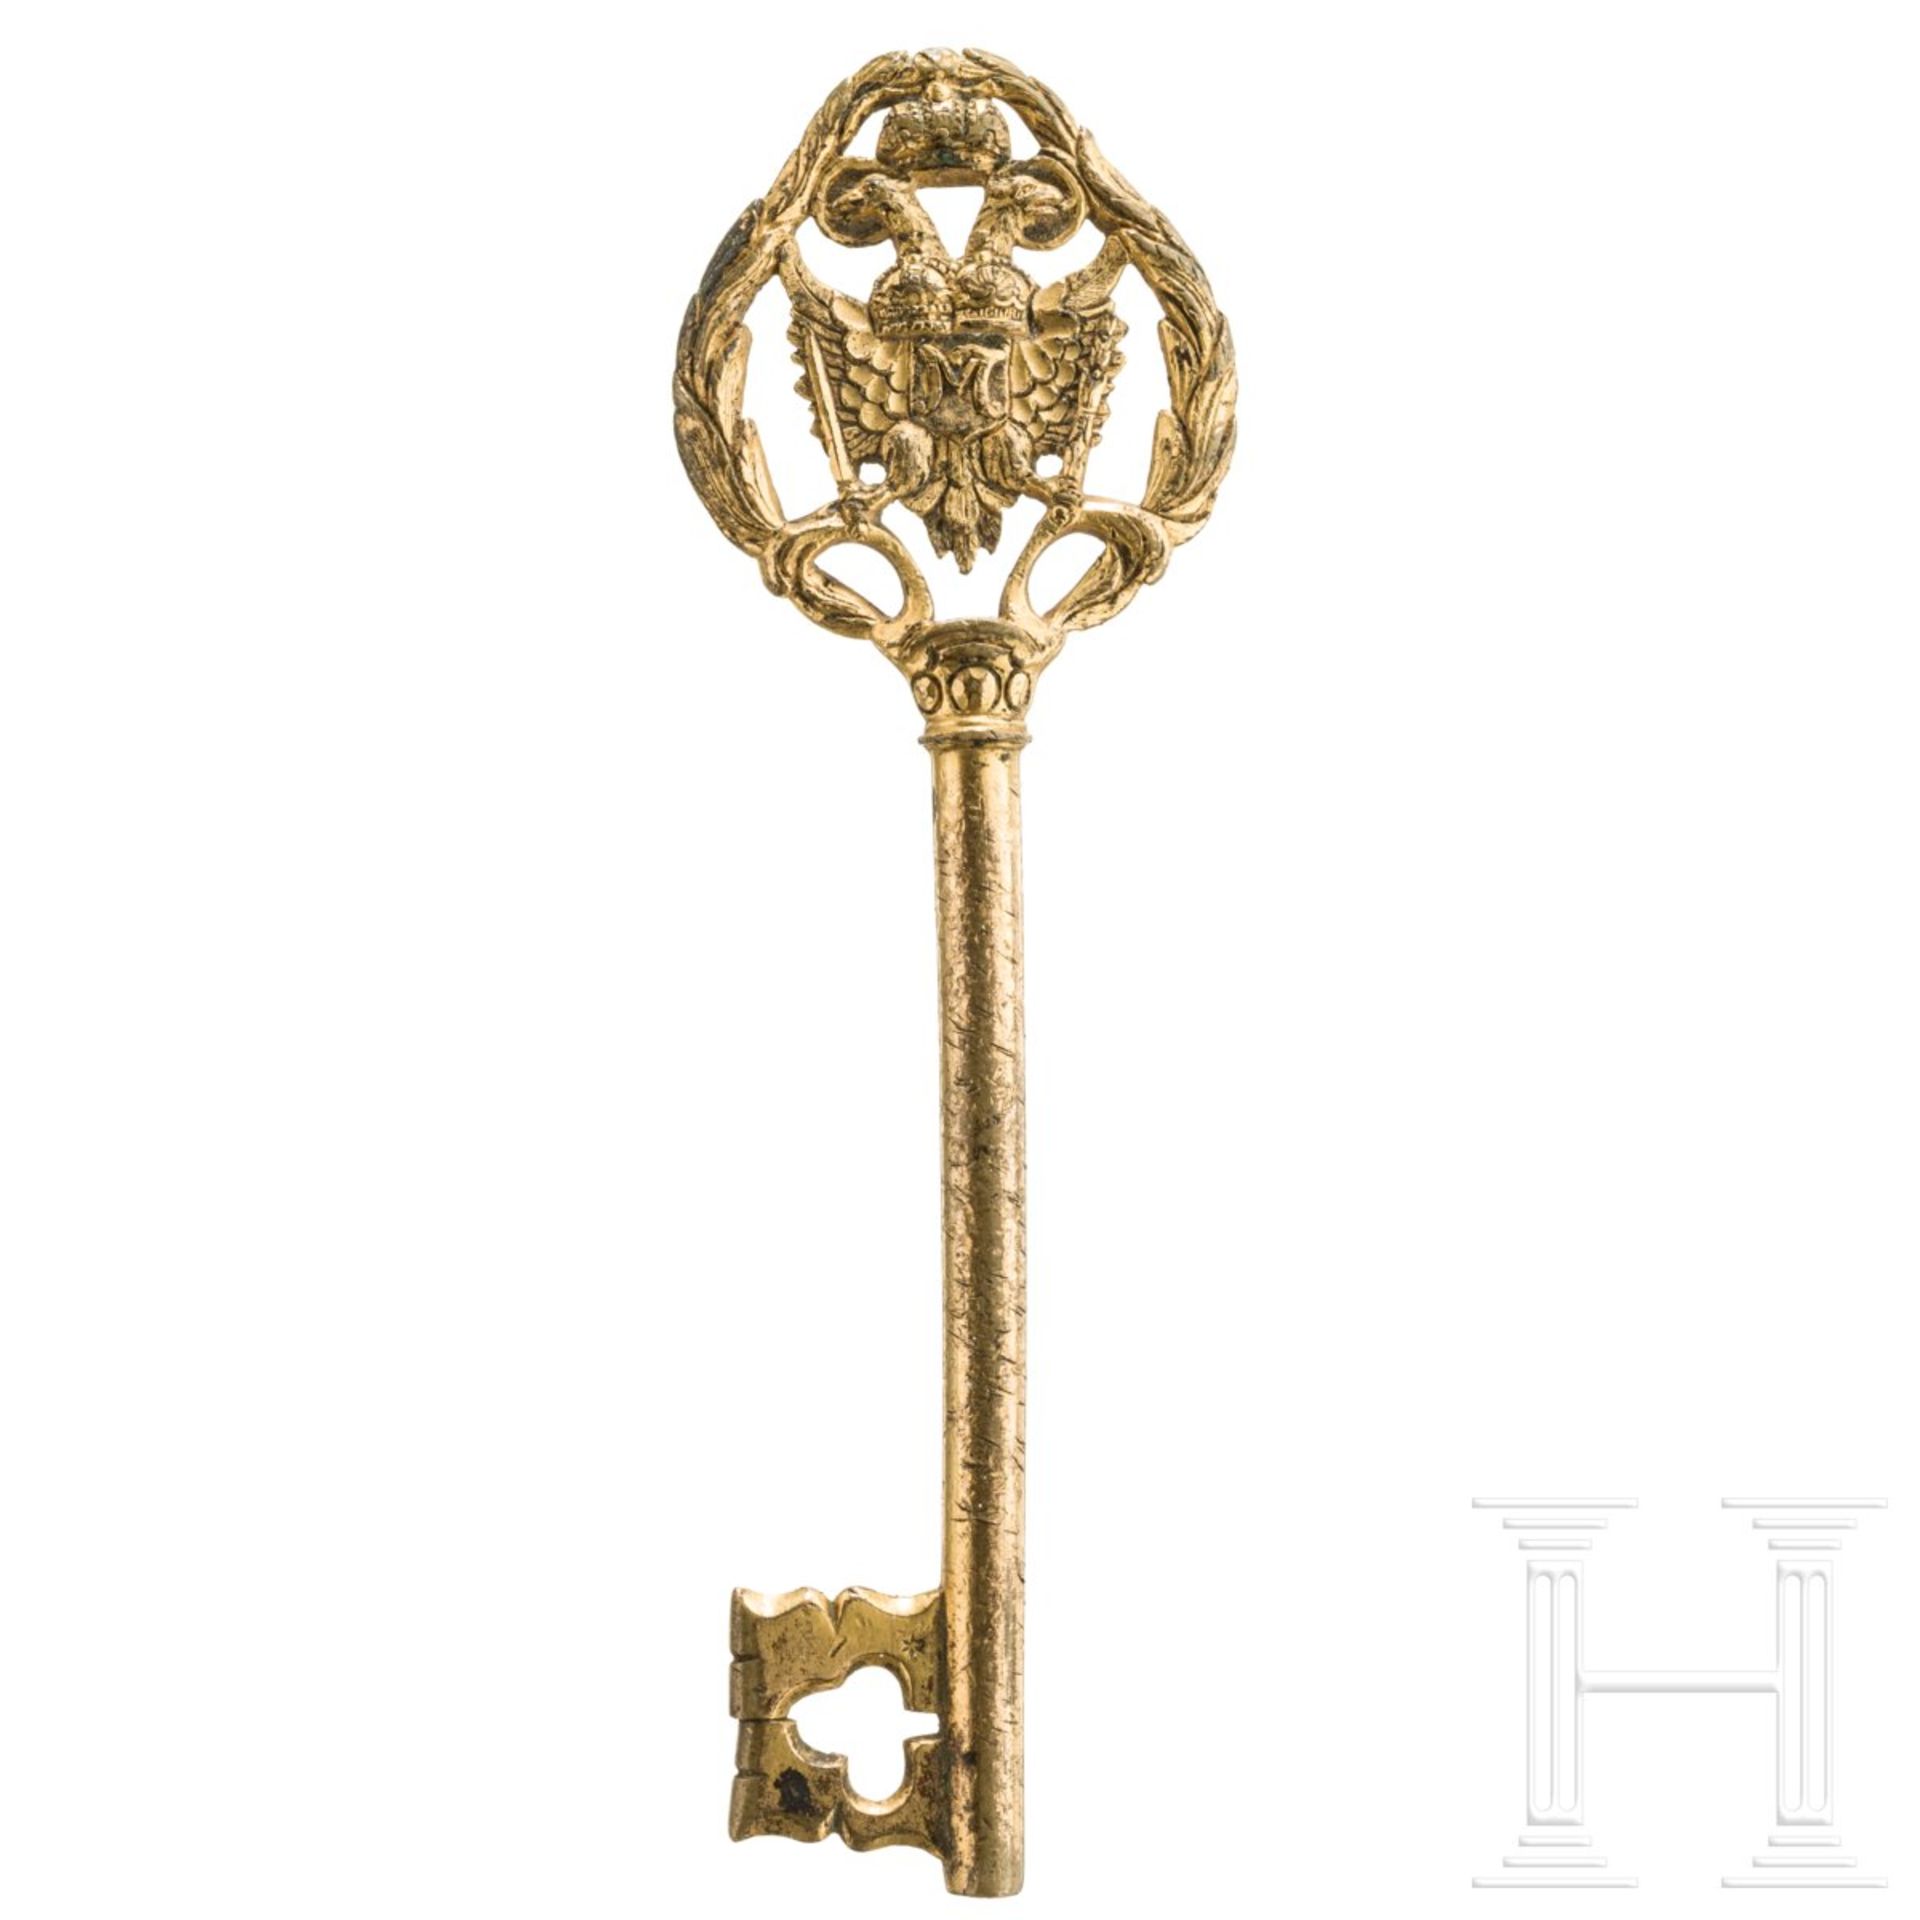 Kammerherrenschlüssel des Heiligen Römischen Reiches aus der Regierungszeit von Kaiser Franz II. (17 - Image 2 of 3